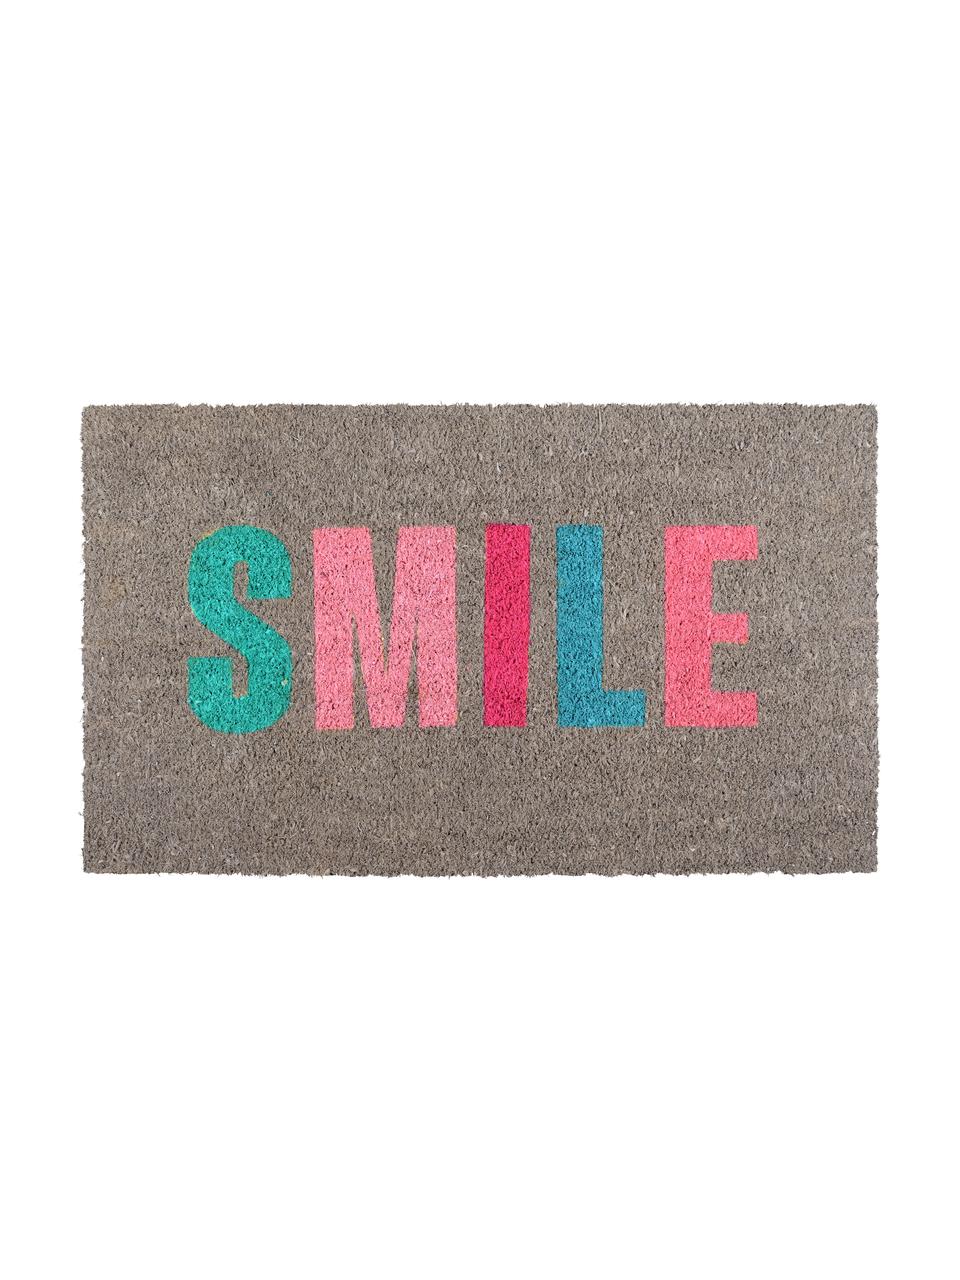 Fußmatte Smile, Oberseite: Kokosfaser, Unterseite: Vinyl, Grau, Mehrfarbig, B 45 x L 75 cm